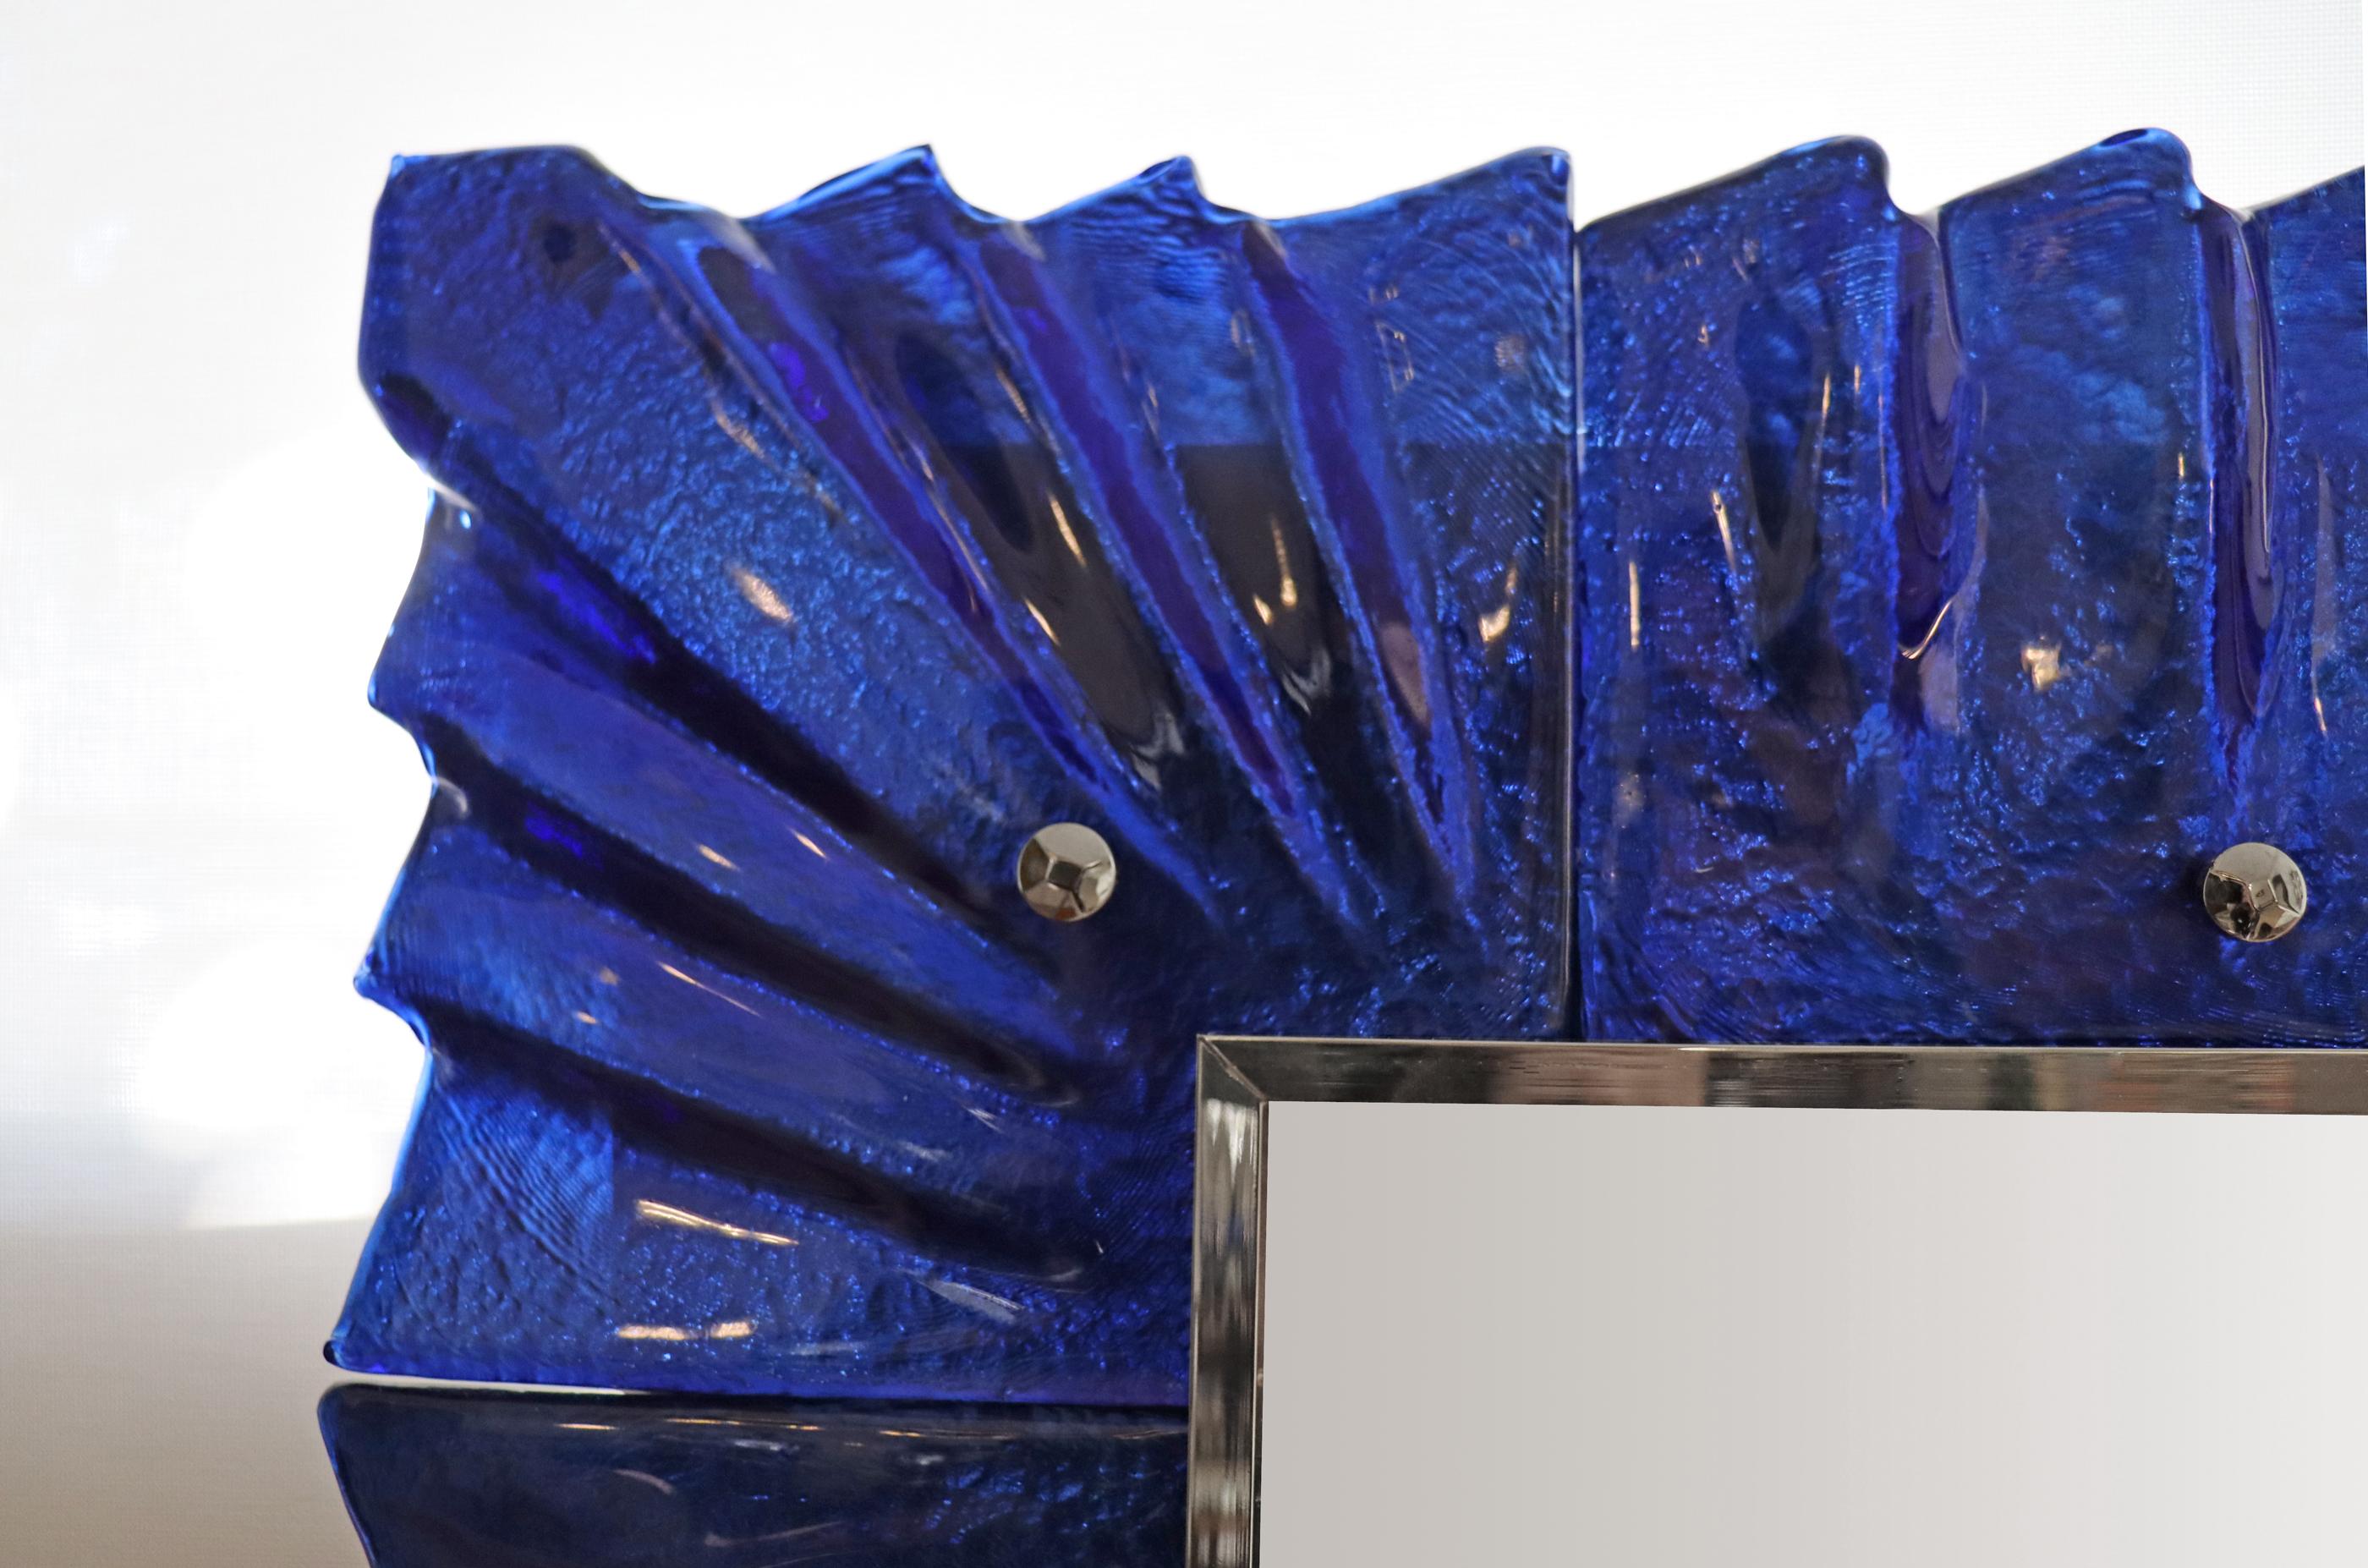 Paire de miroir en verre bleu cobalt de Murano, en stock
Accents en cabochon plaqué nickel.
La texture et la couleur du verre sont absolument saisissantes.
Galerie périphérique nickelée
Peut être accroché verticalement ou horizontalement.
Paire